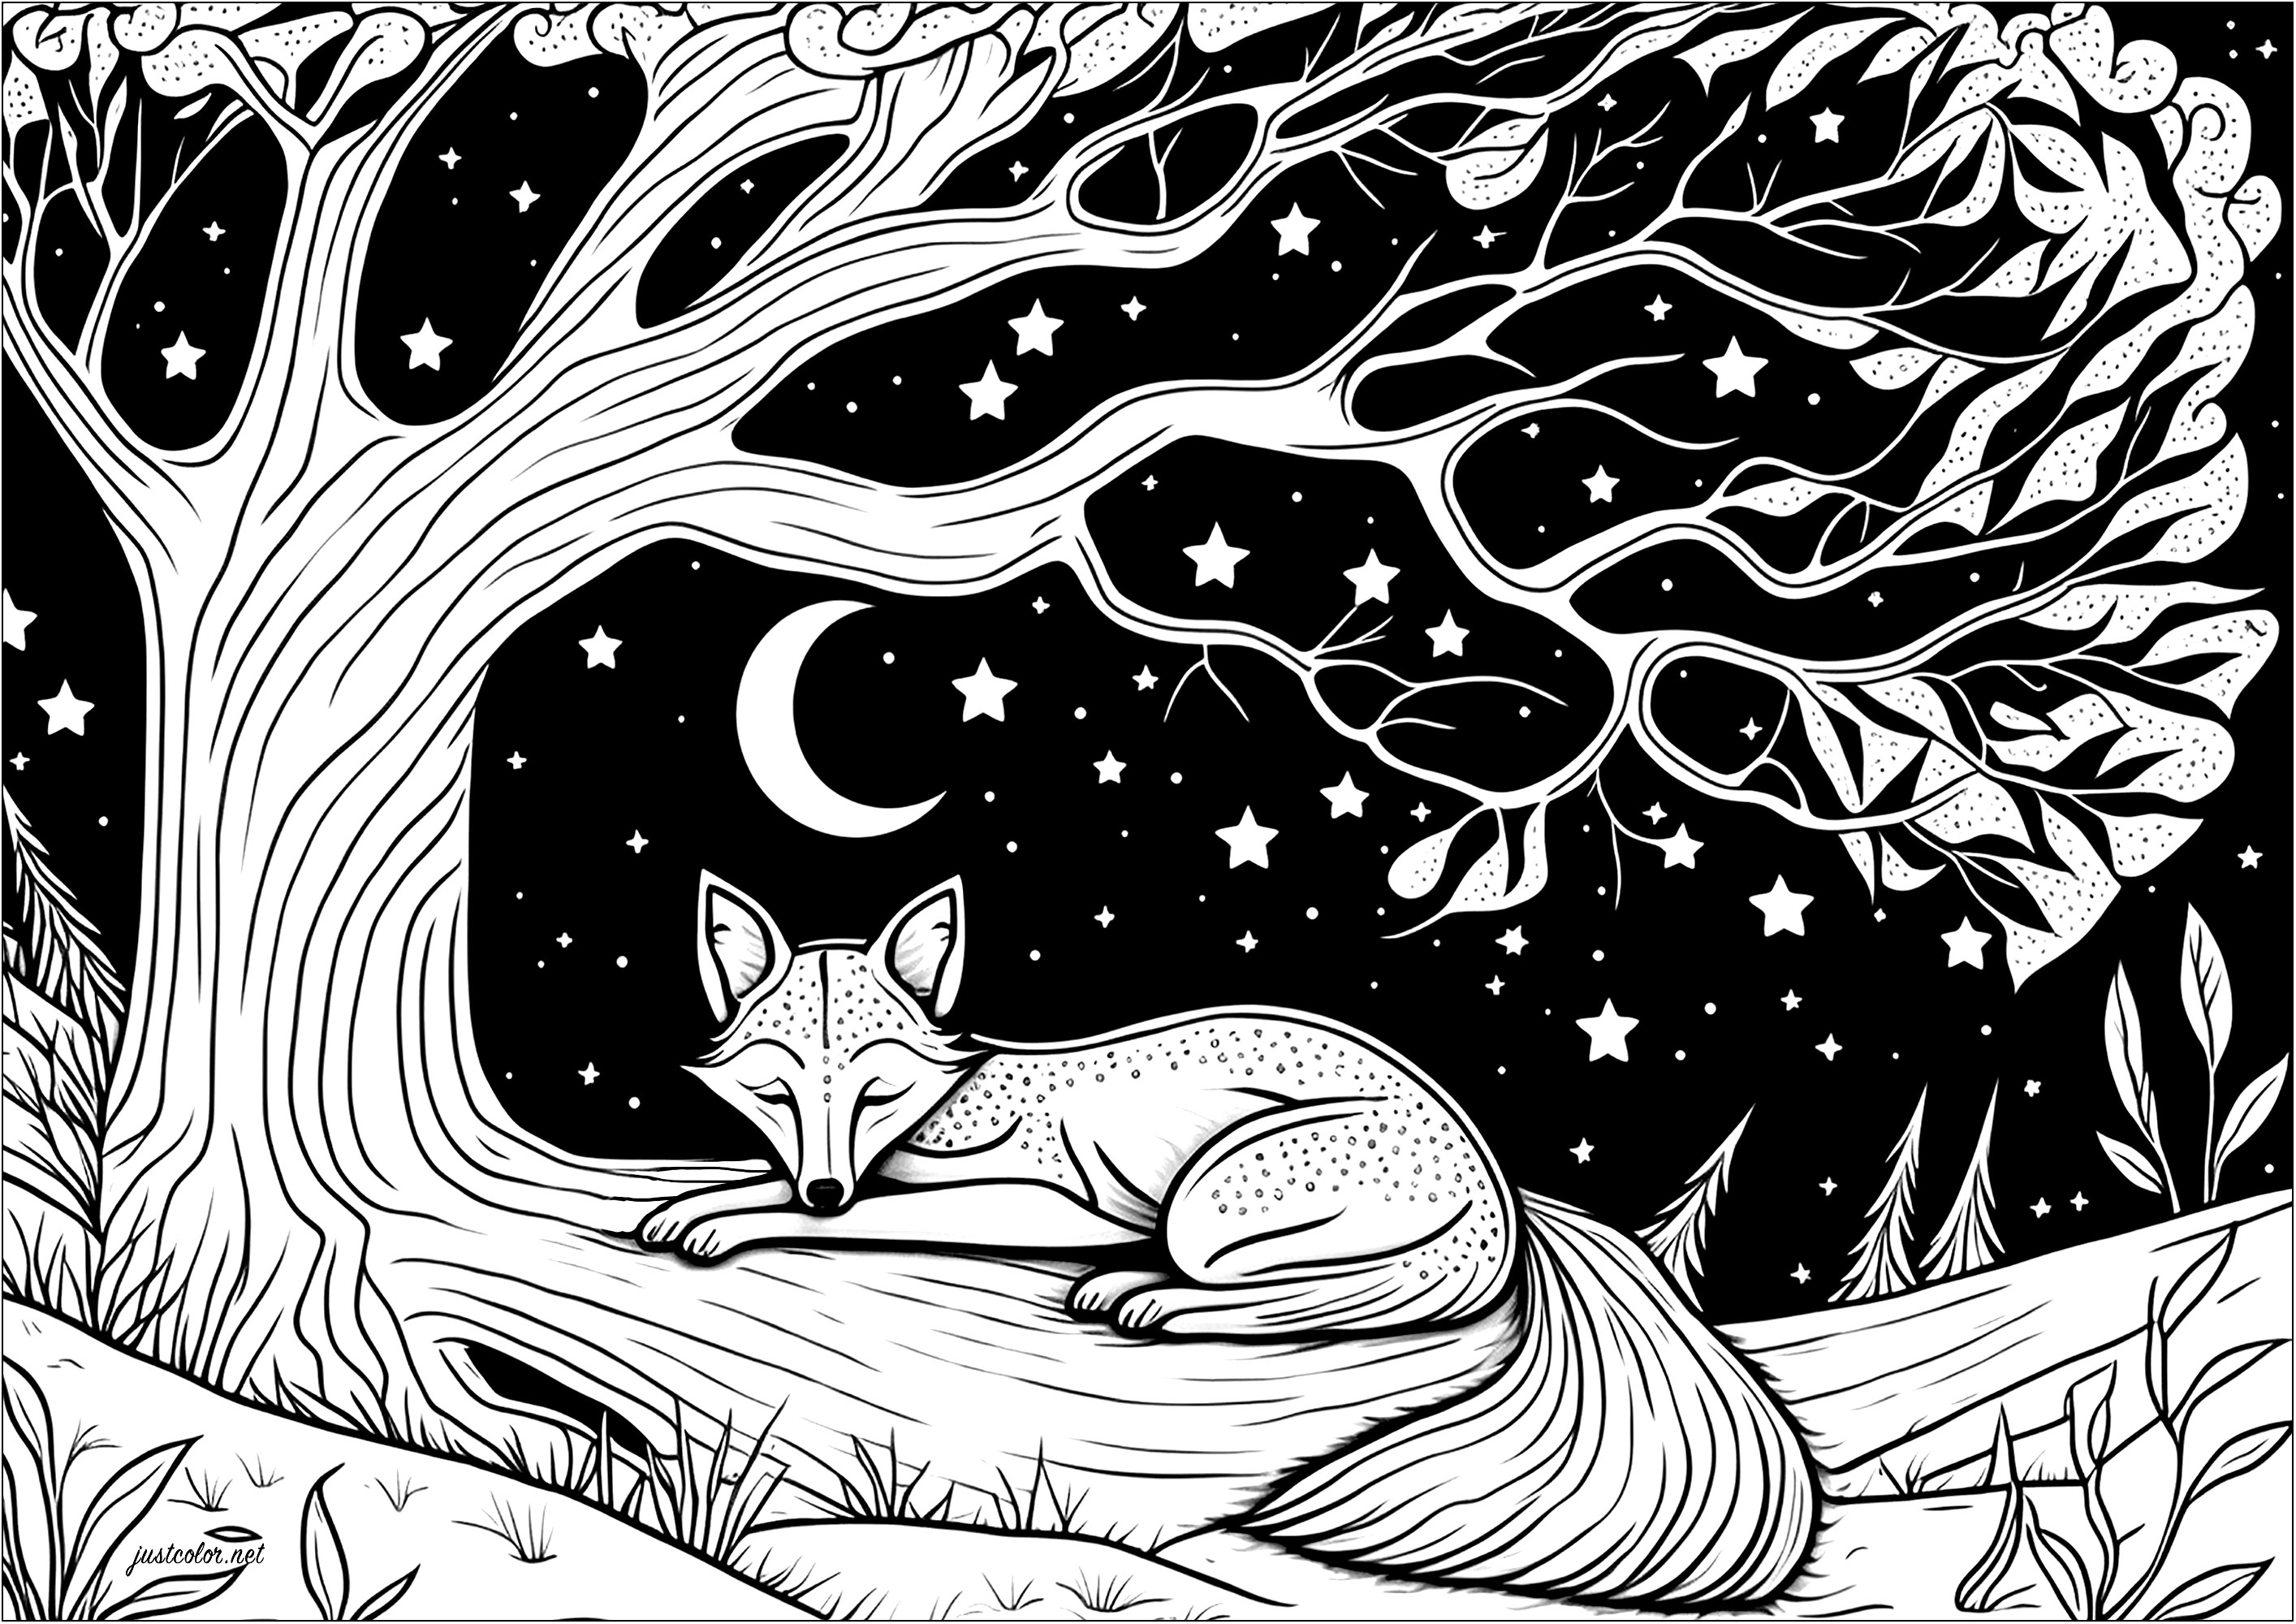 Raposa a dormir num ramo de árvore - Raposas - Coloring Pages for Adults